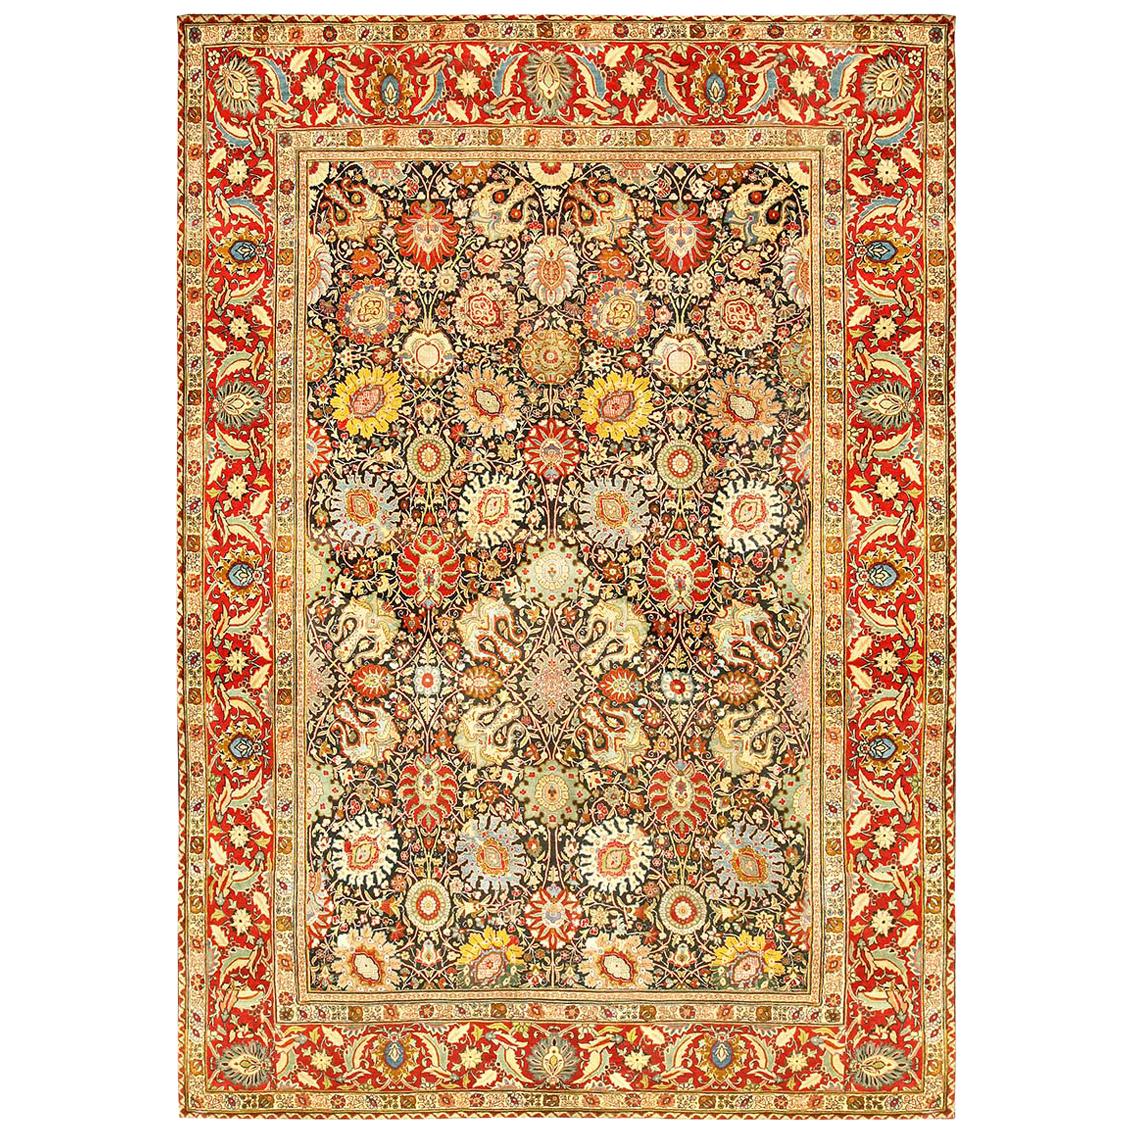 Antique Persian Tabriz Floral Rug Size Adjusted